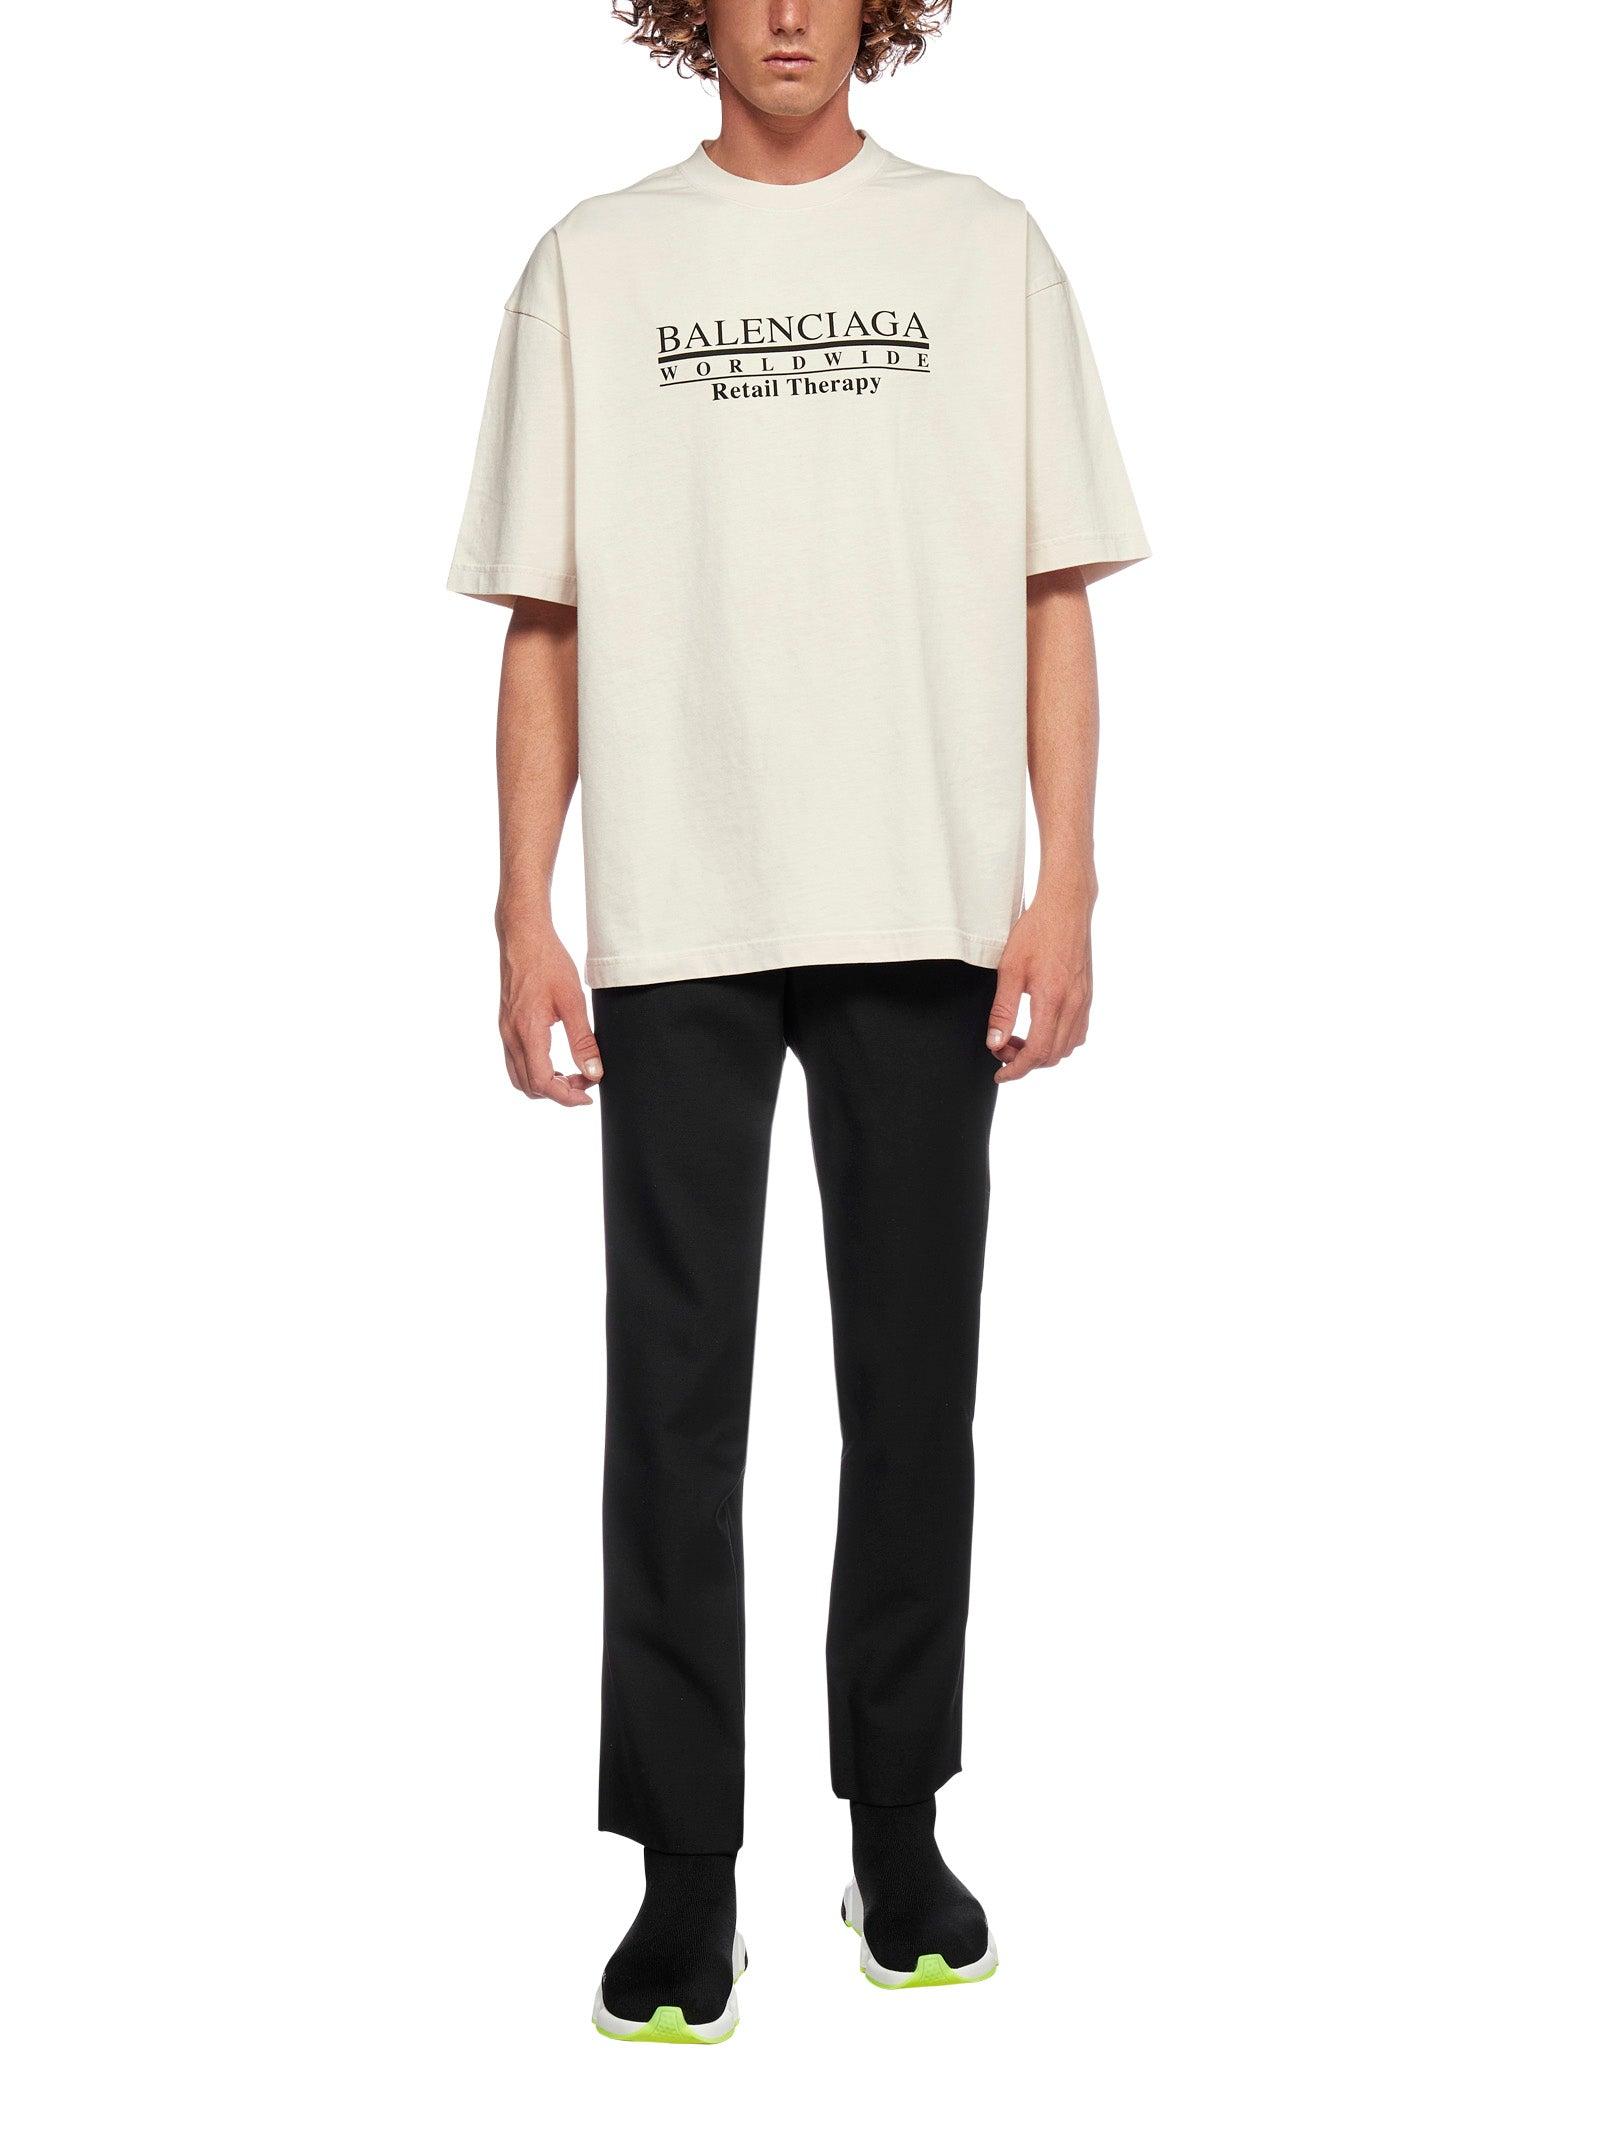 Balenciaga Men's White Retail Therapy T-shirt